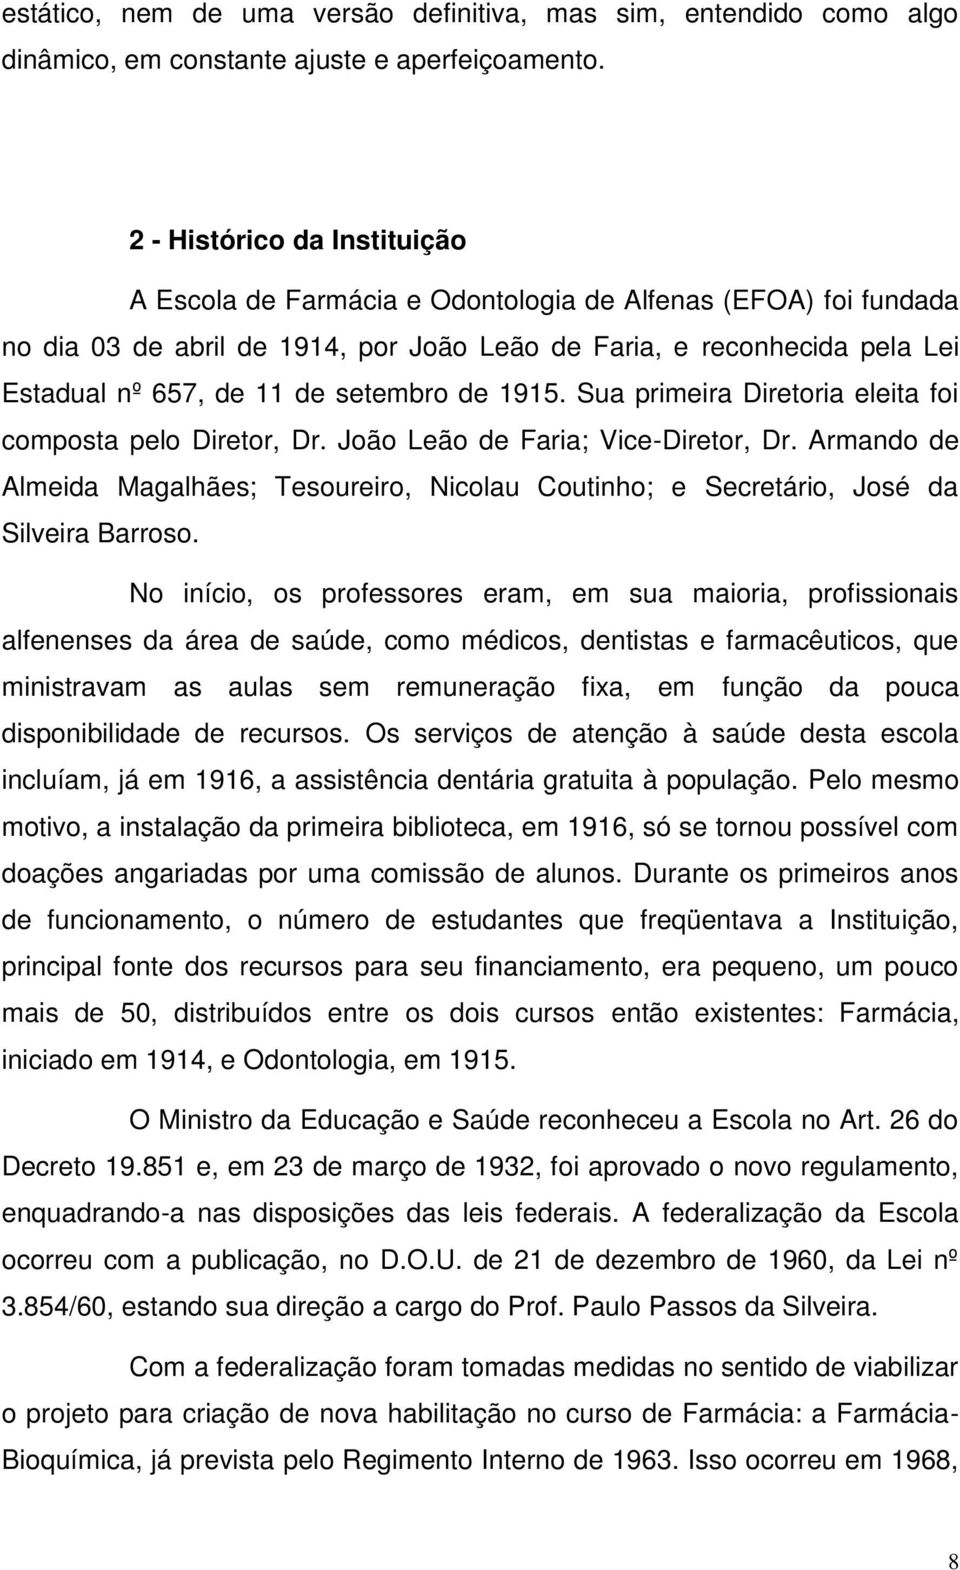 setembro de 1915. Sua primeira Diretoria eleita foi composta pelo Diretor, Dr. João Leão de Faria; Vice-Diretor, Dr.